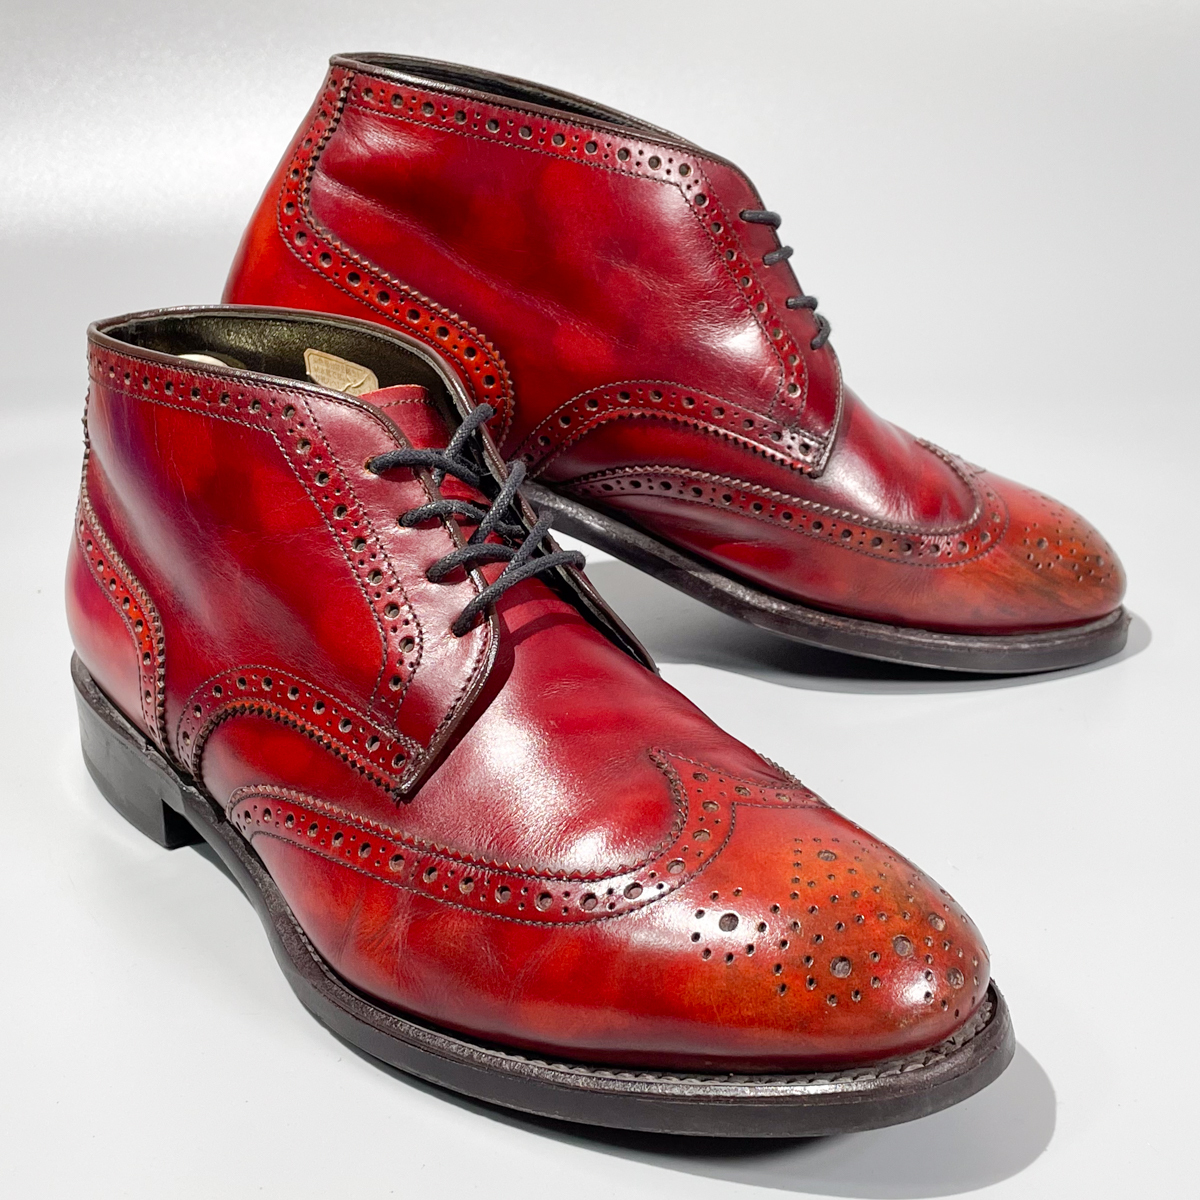 即決 REGAL リーガル ショートブーツ ウイングチップ ハイカット バーガンディ 赤茶色 メンズ 本革 革靴 25.5cm ビジネスシューズ A1892_画像2